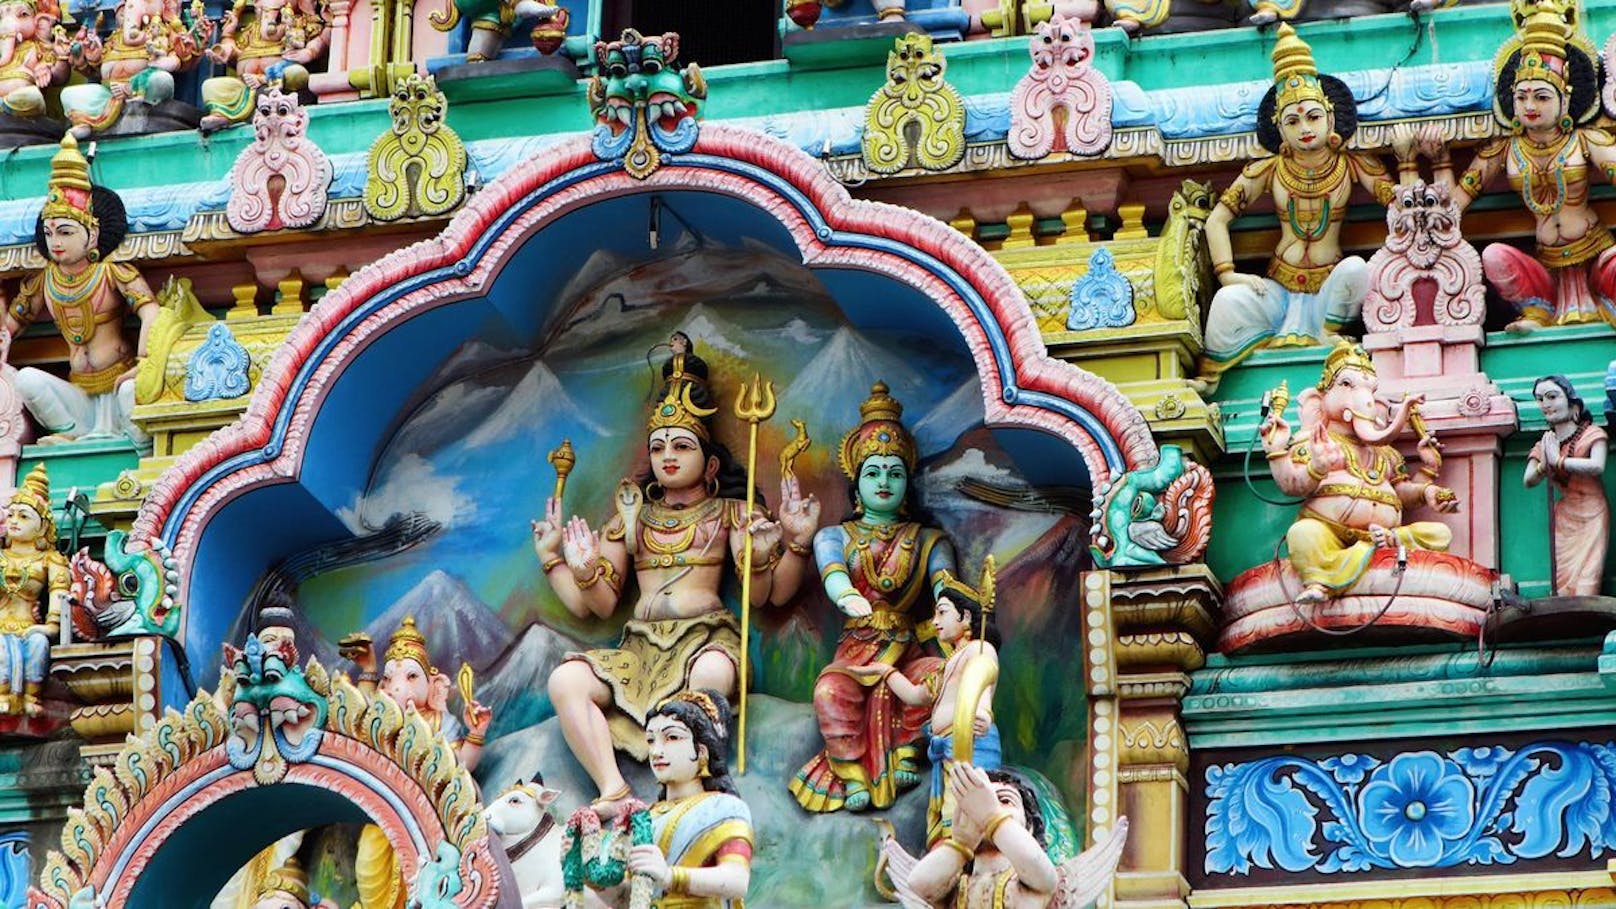 In Indien haben Diebe 16 wertvolle Hindu-Statuen geklaut (Symbolbild).